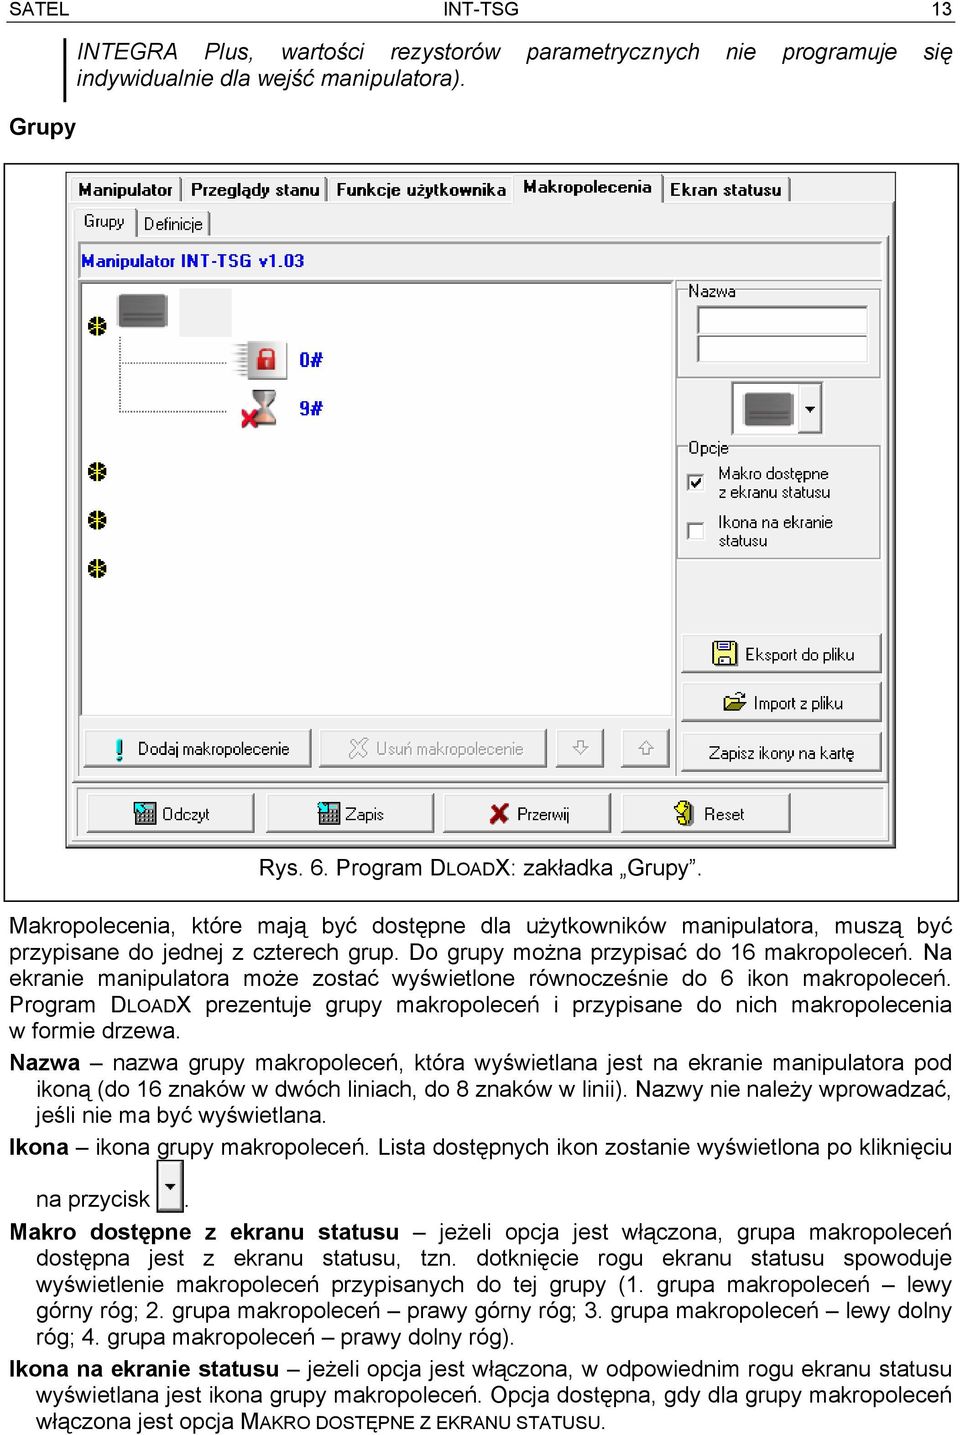 Na ekranie manipulatora może zostać wyświetlone równocześnie do 6 ikon makropoleceń. Program DLOADX prezentuje grupy makropoleceń i przypisane do nich makropolecenia w formie drzewa.